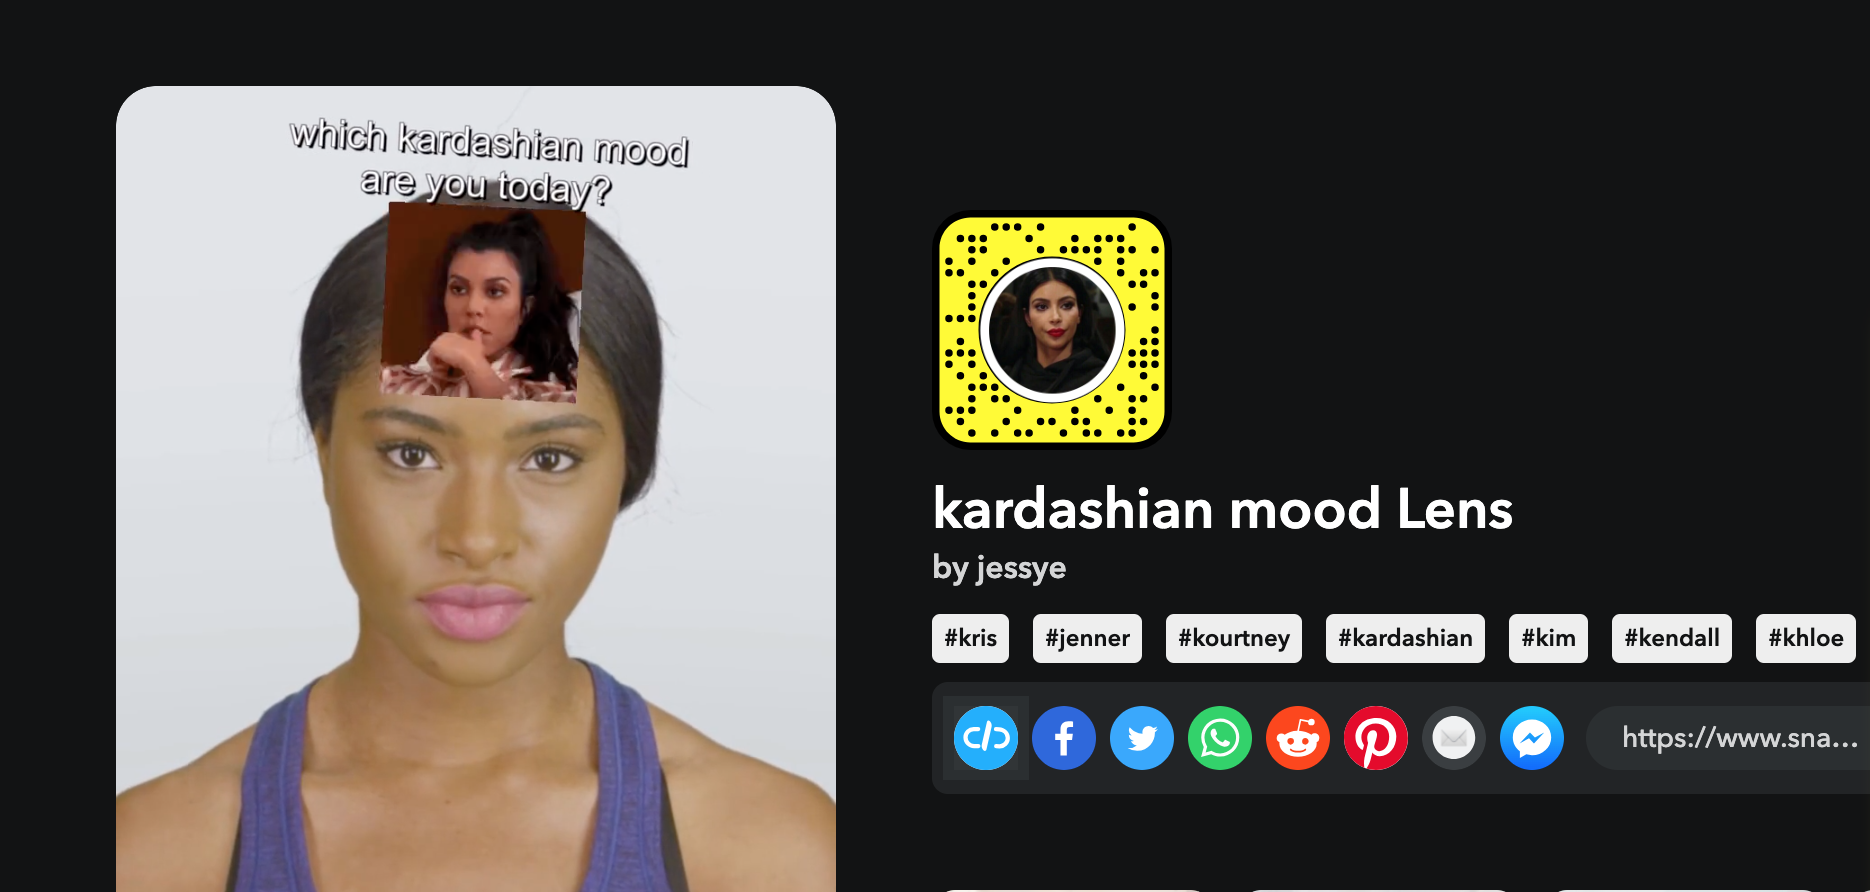 Kardashian Mood Lens by jessye